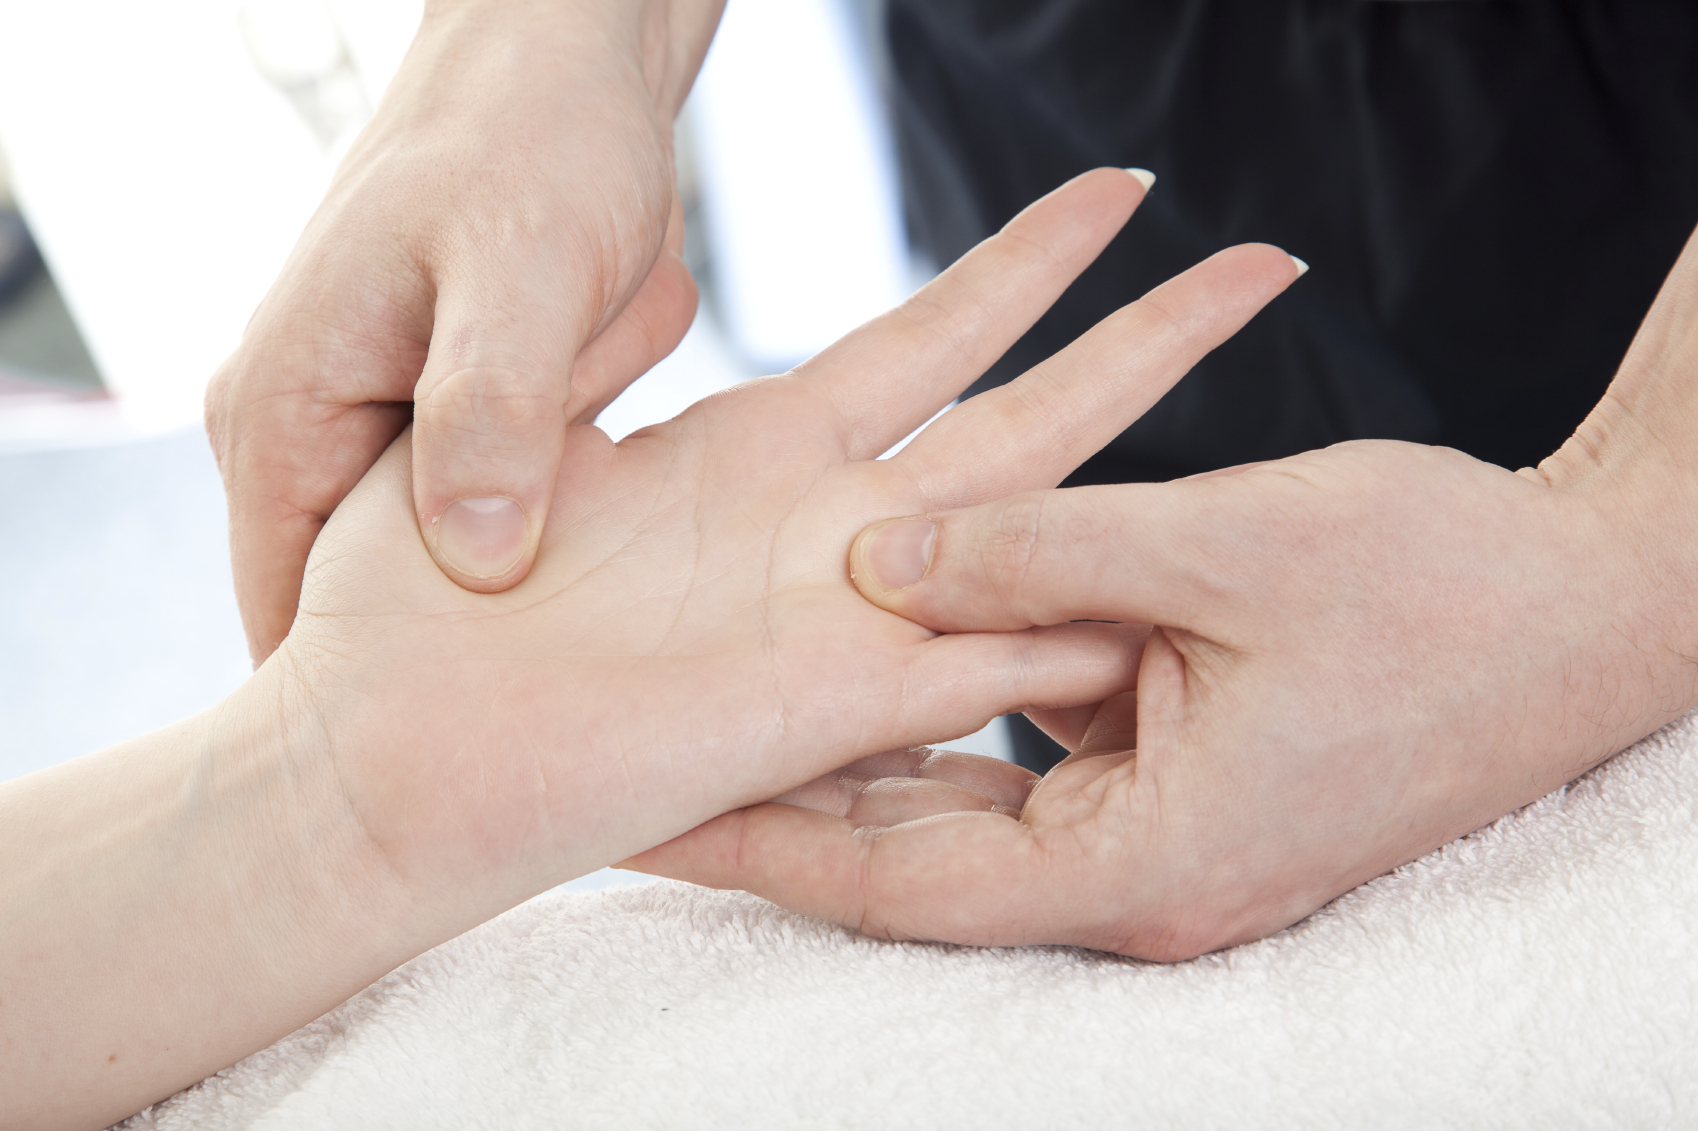 Doctor checking finger joints for rheumatoid arthritis